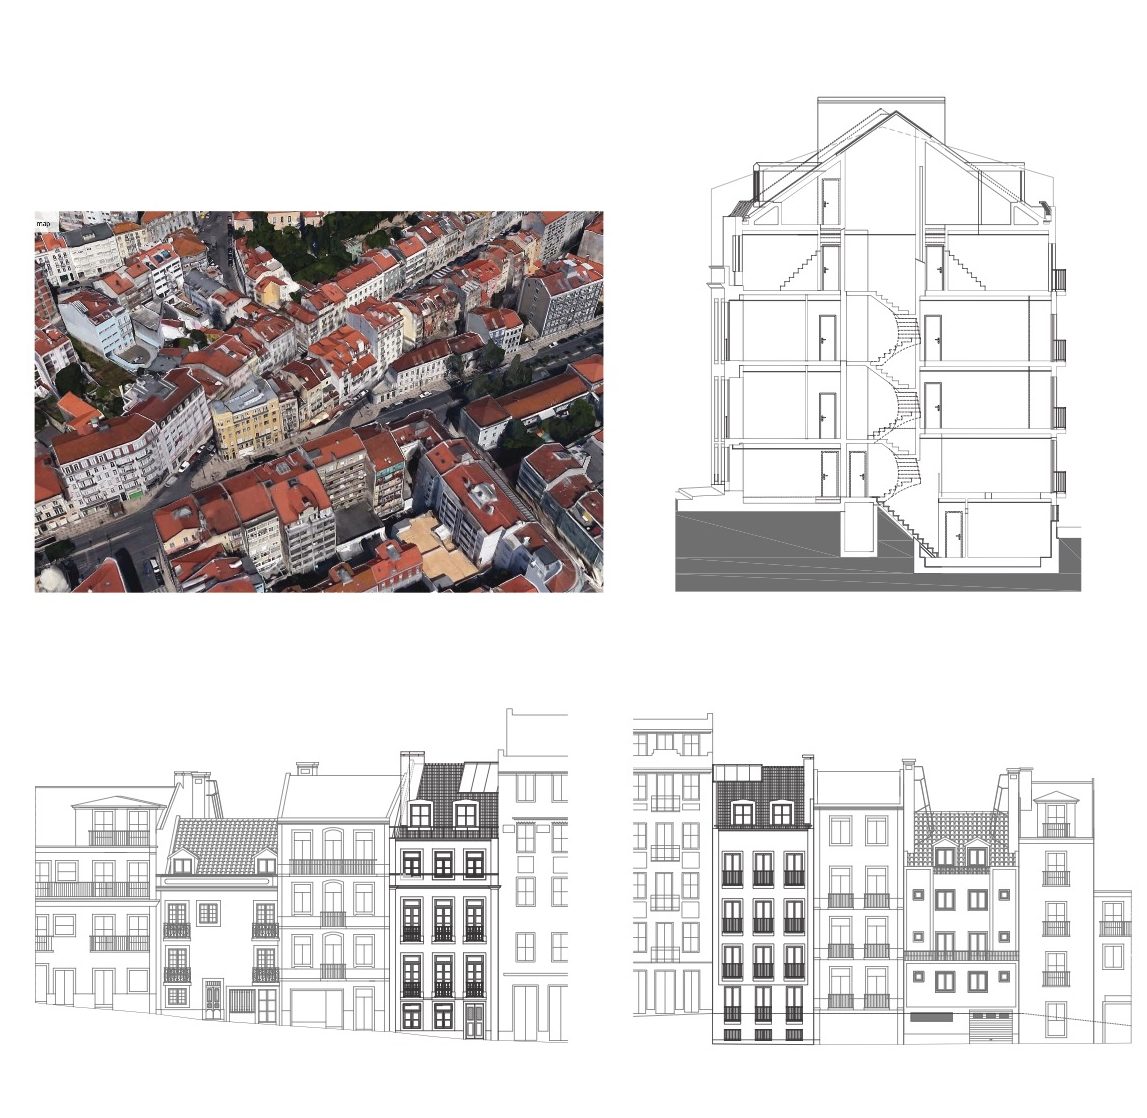 Remodelação e Ampliação do Edifício Rua dos Anjos N.º 24 Lisboa – habitação coletiva de 6 pisos, tipologias T1 e T2 - 597 m2 de área bruta de construção.